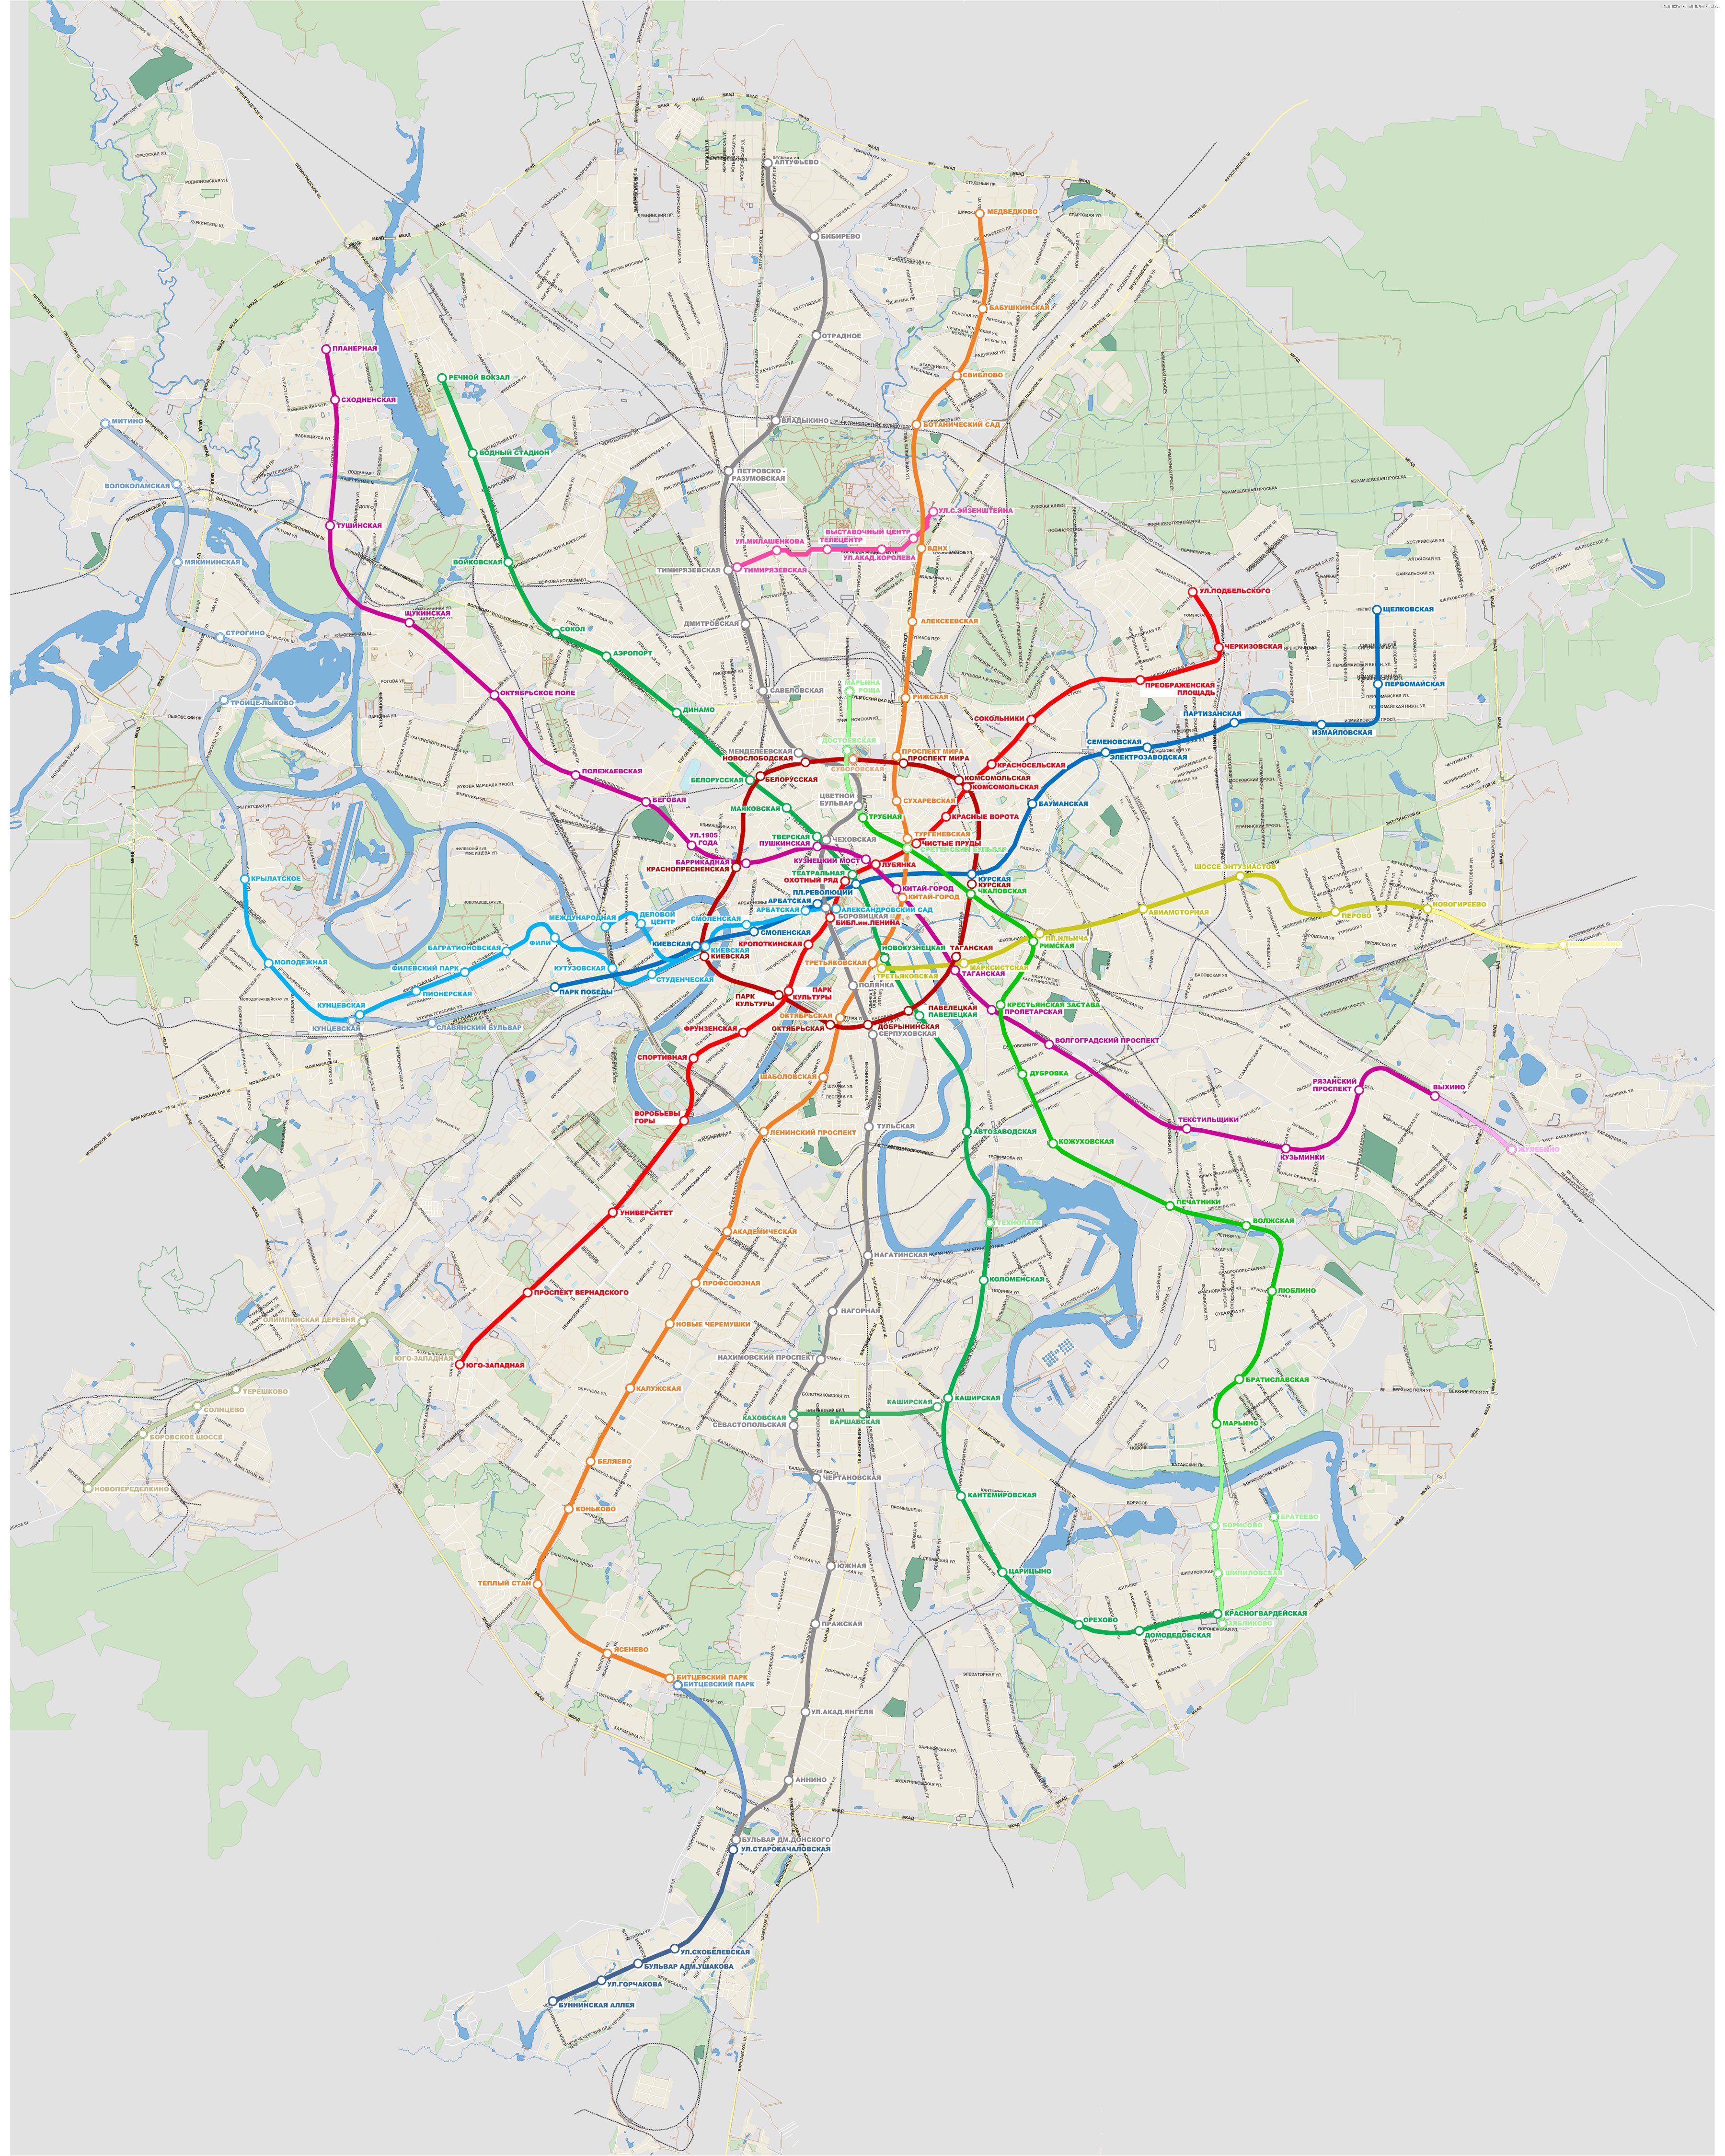 Карта московских метро города